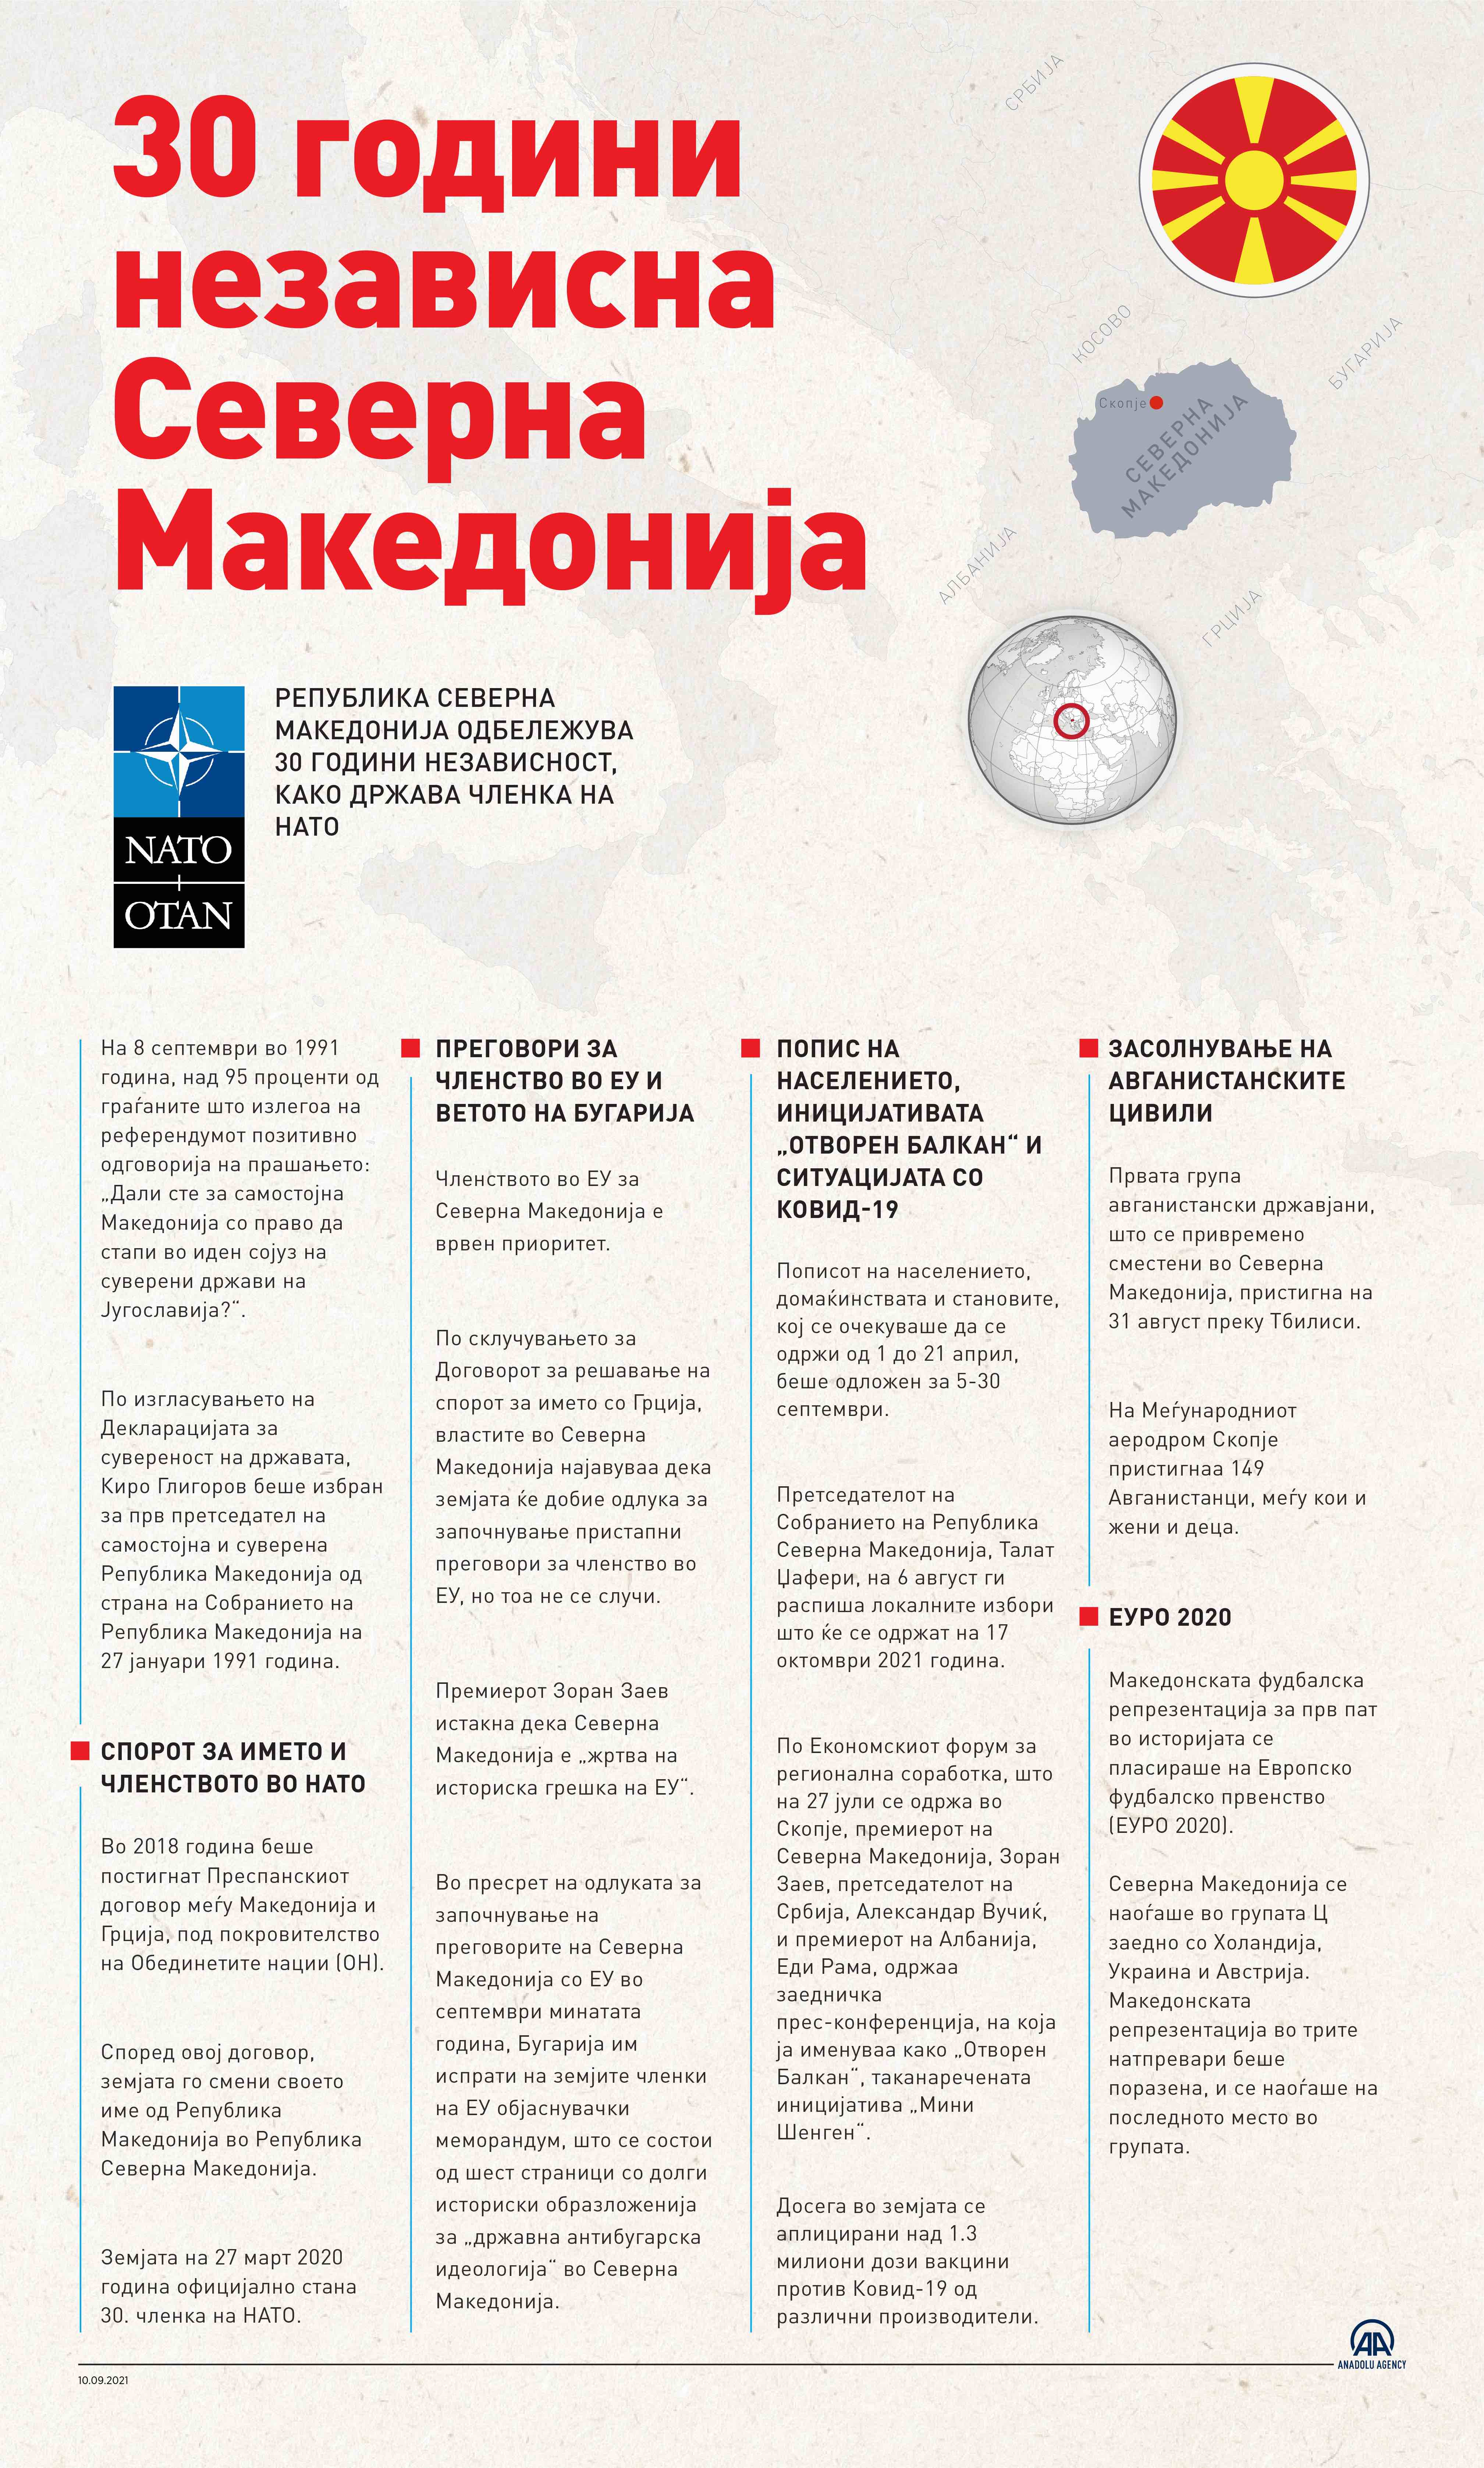 8 Септември - 30 години независна Северна Македонија